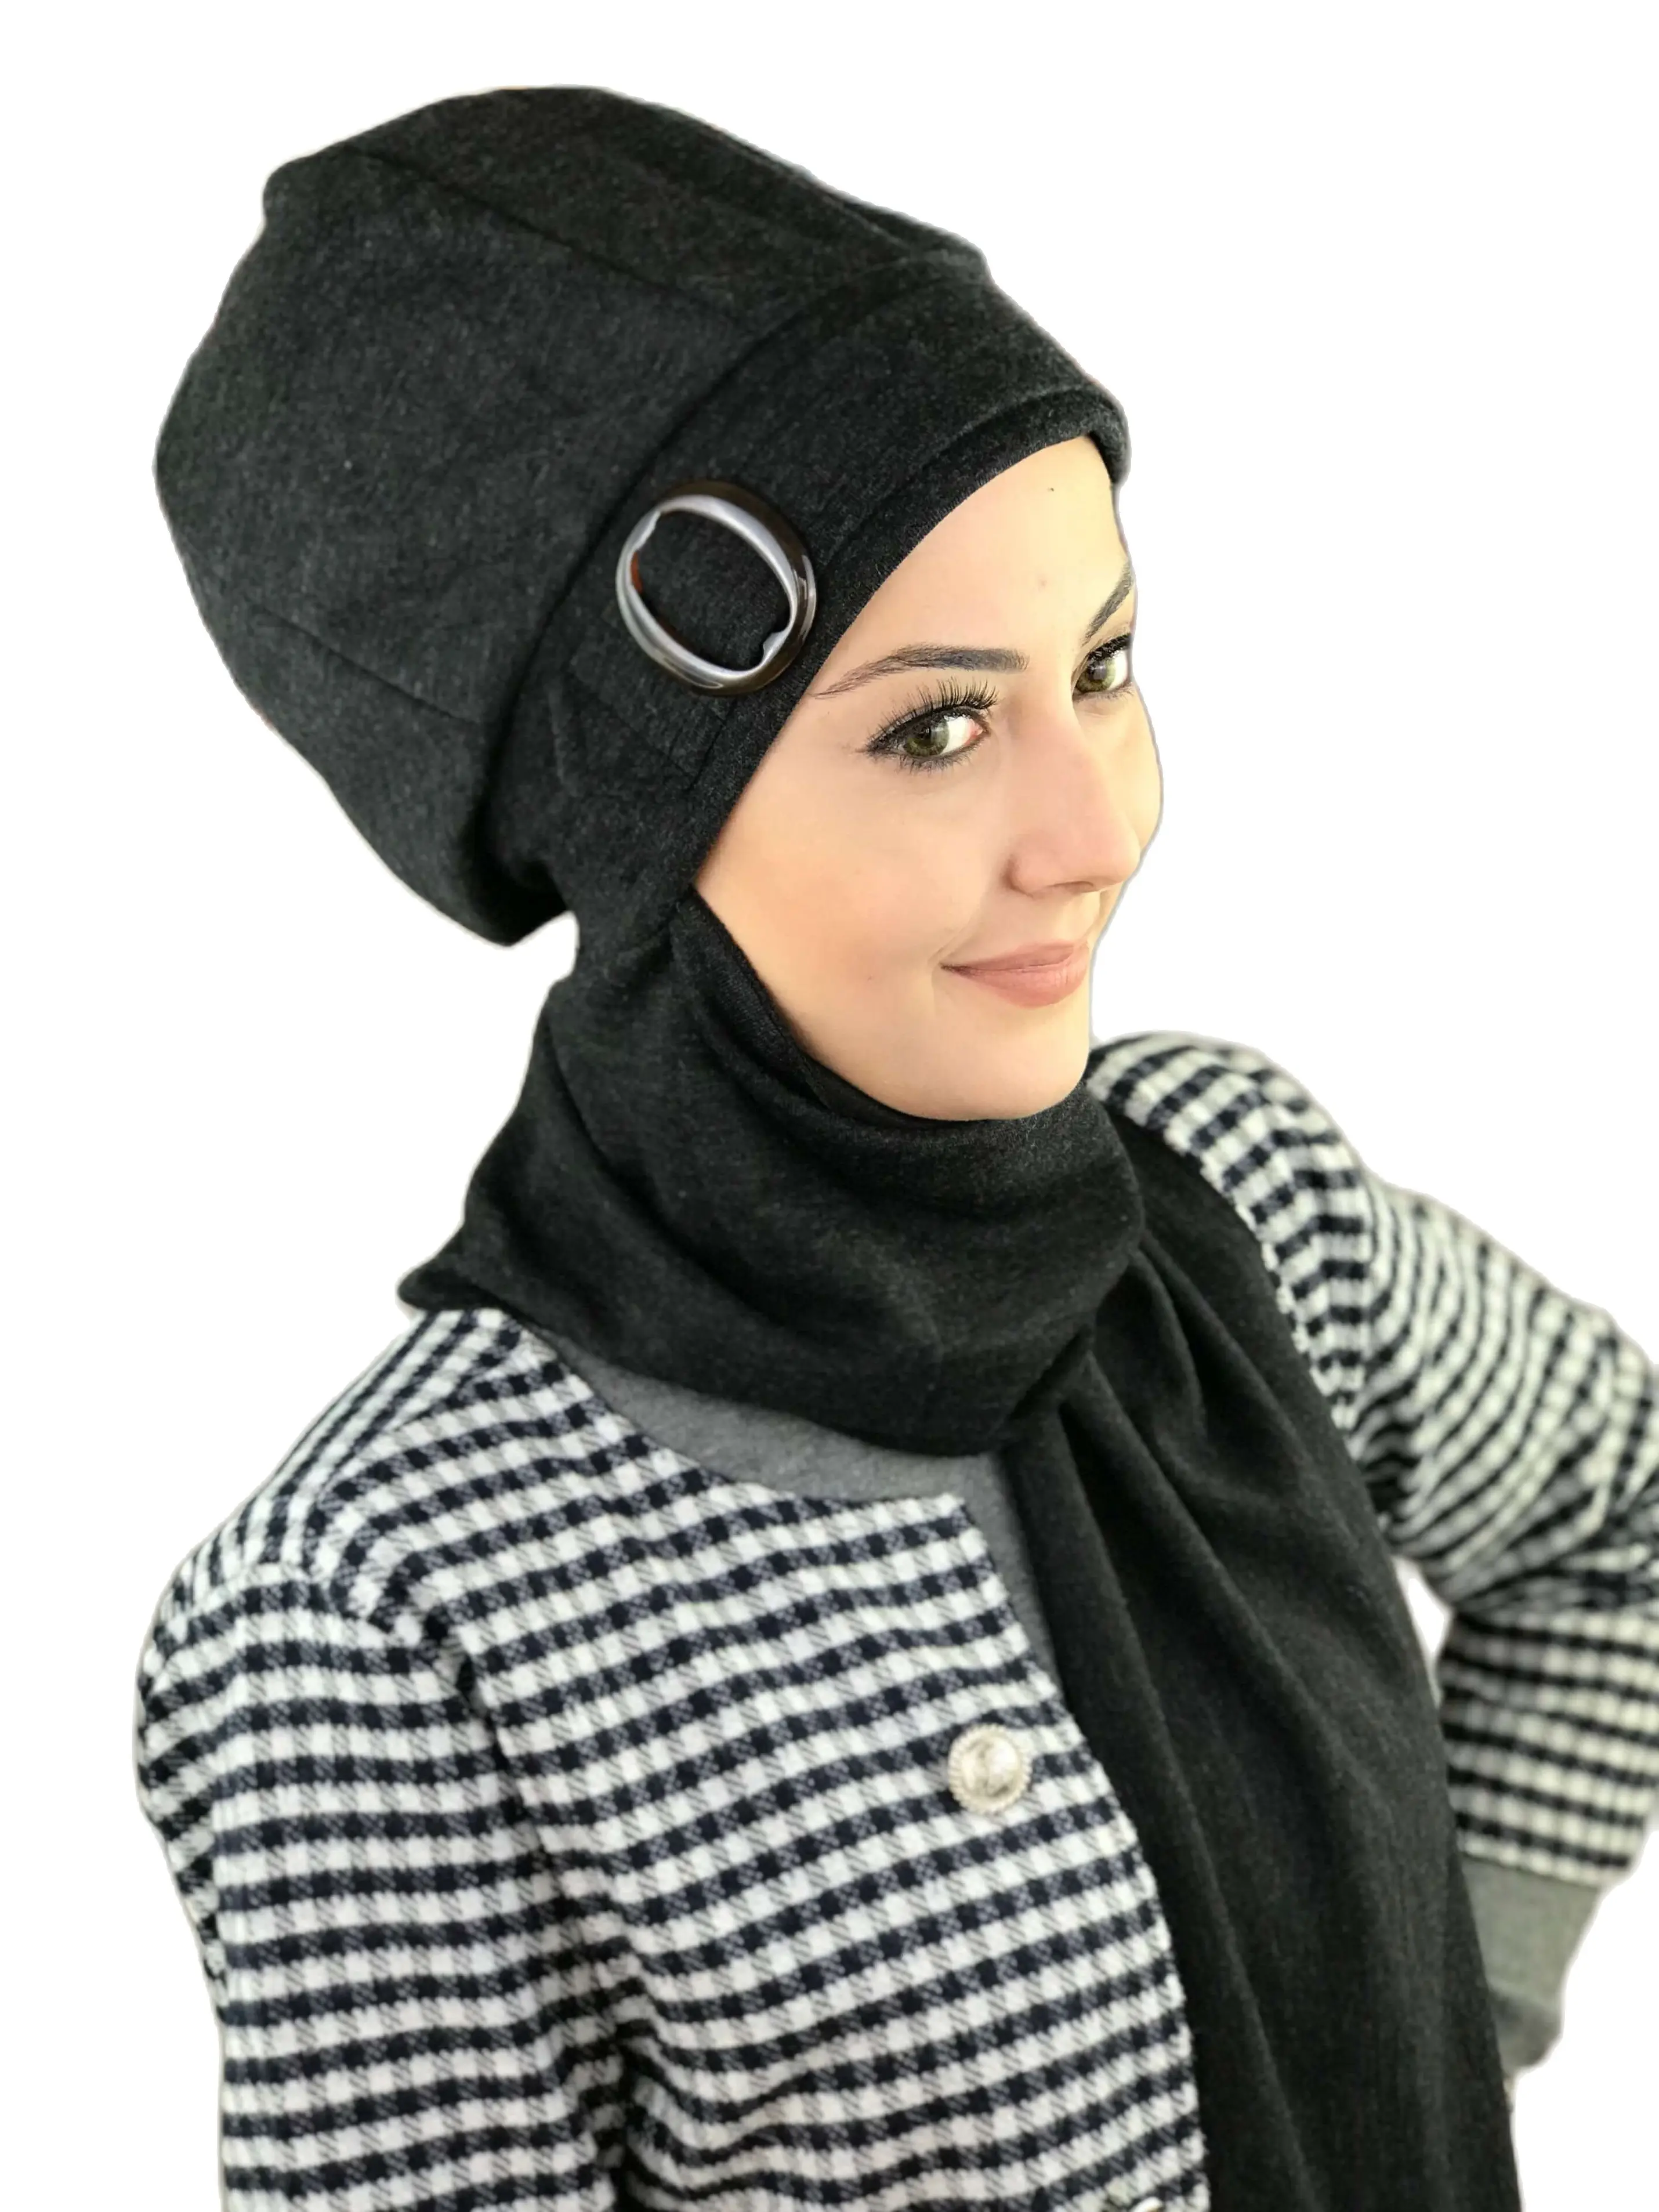 

New Fashion Hijab Women Muslim 2021 Turban Cancer Chemo Head Wrap Scarf Bonnet Dark Anthracite Buckled Scarf Beret Shawl